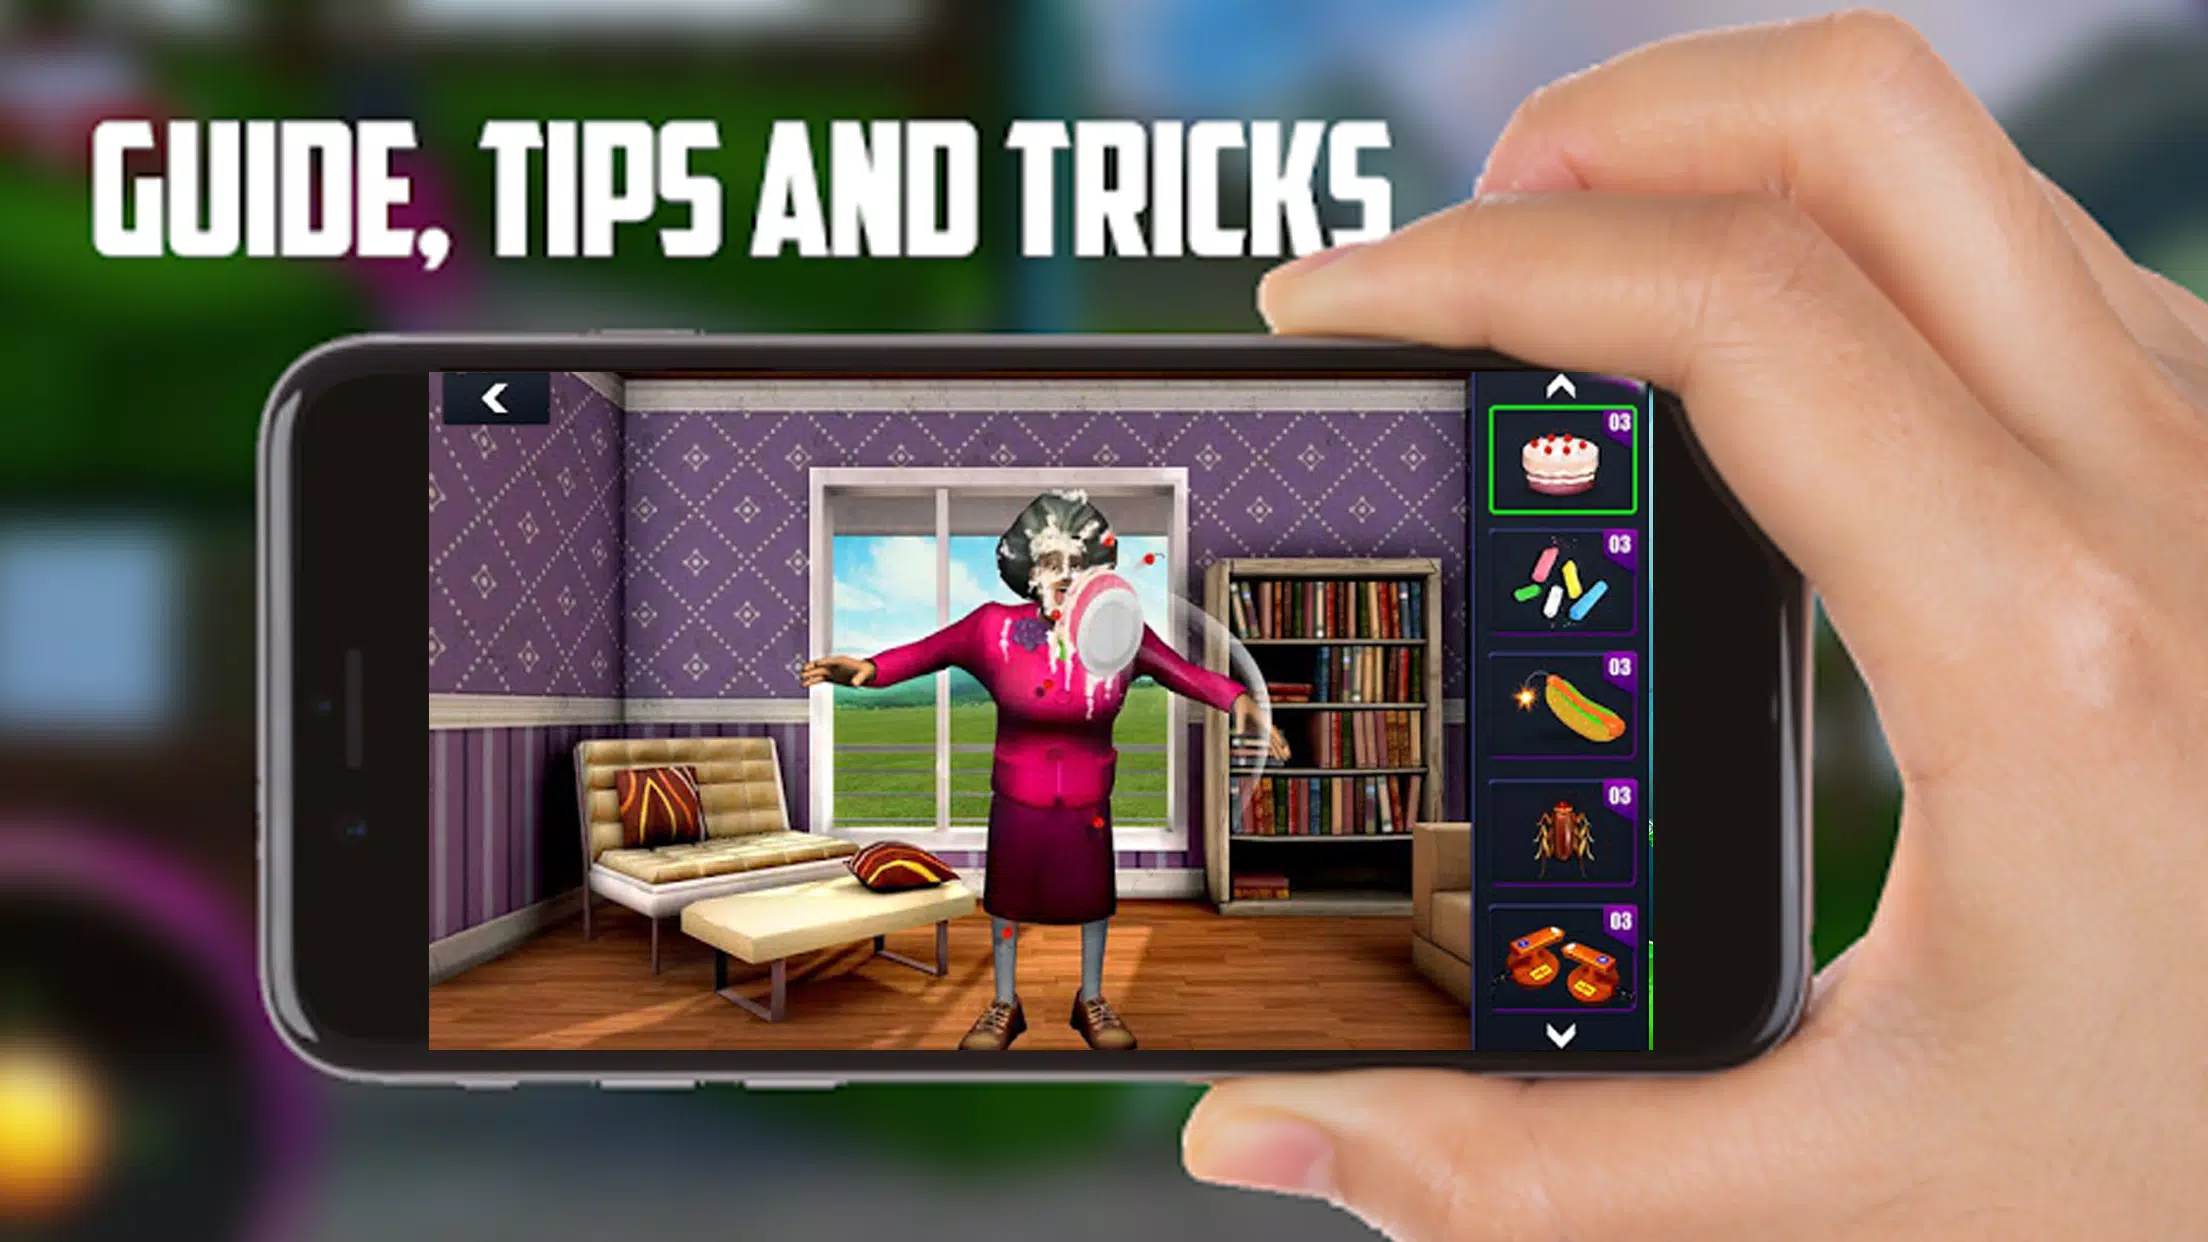 Download do APK de Guide for Scary Teacher 3D Walkthrough 2020 para Android